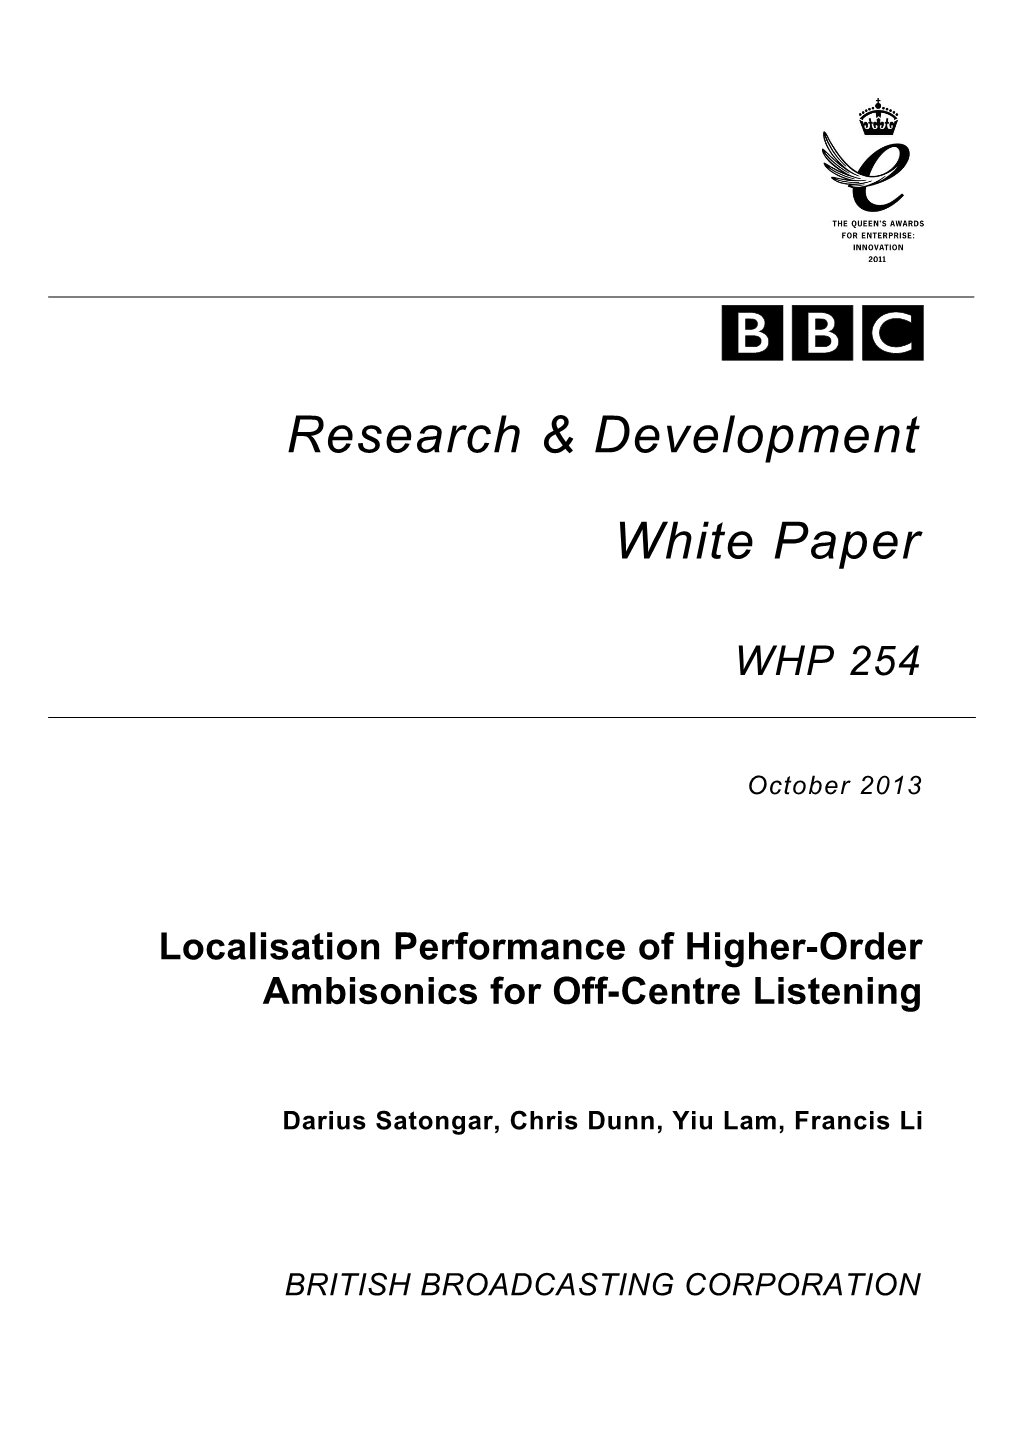 BBC Research & Development White Paper WHP254